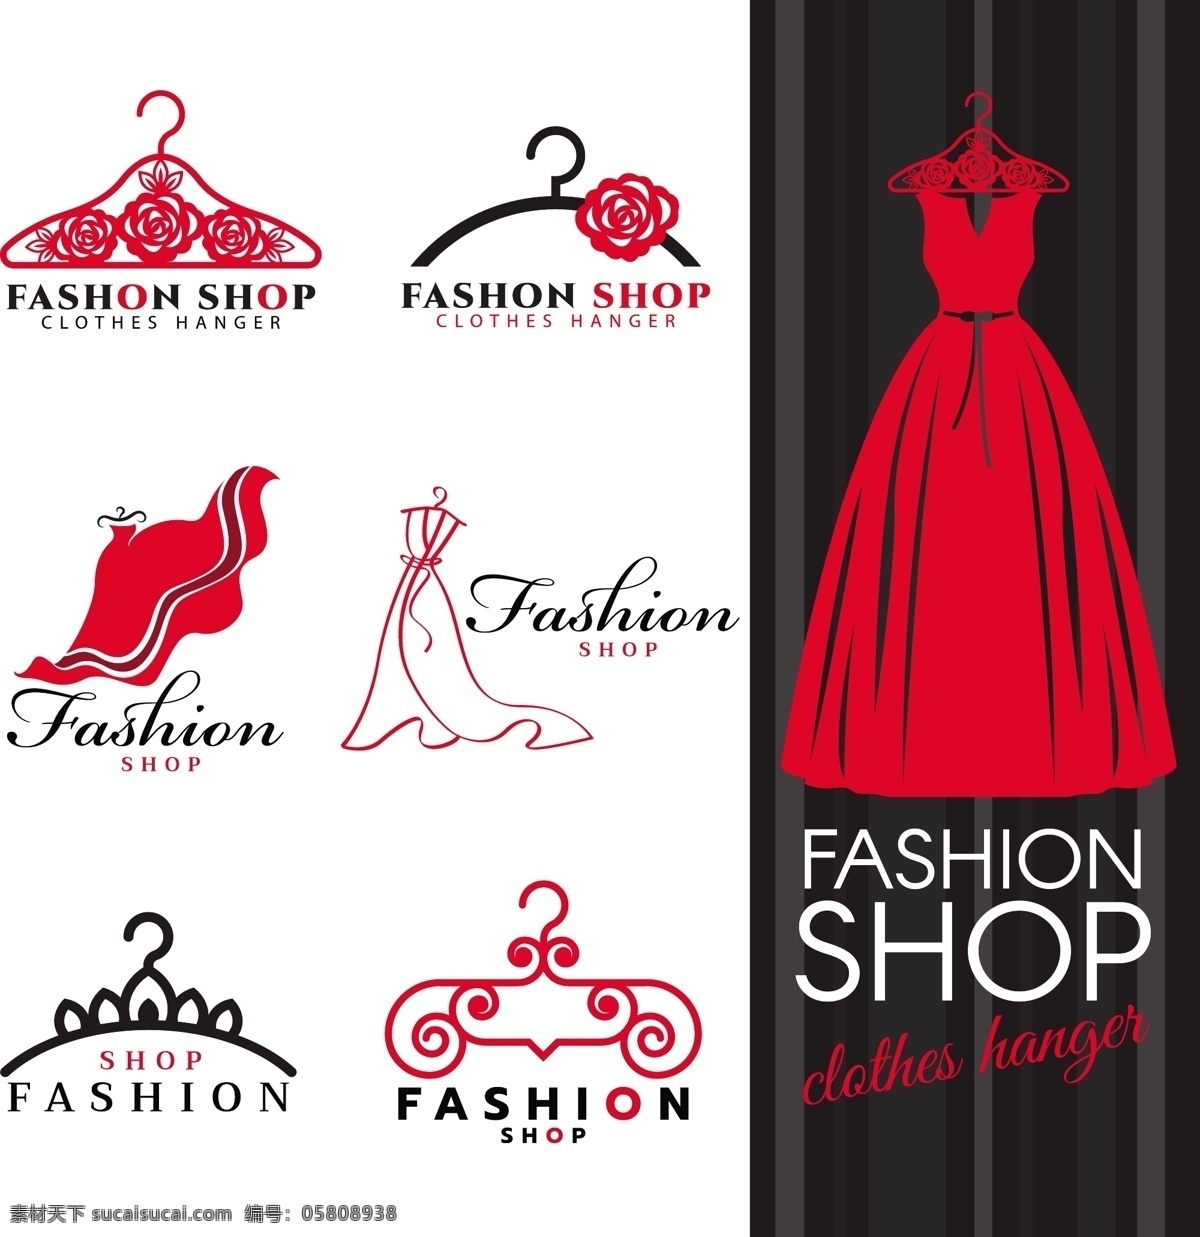 红色 创意 时尚 服装店 logo 红色裙子 红色衣架 商务logo 对外形象 vi设计 公司标志 图标设计 公司logo 企业商标 企业宣传 时尚logo logo设计